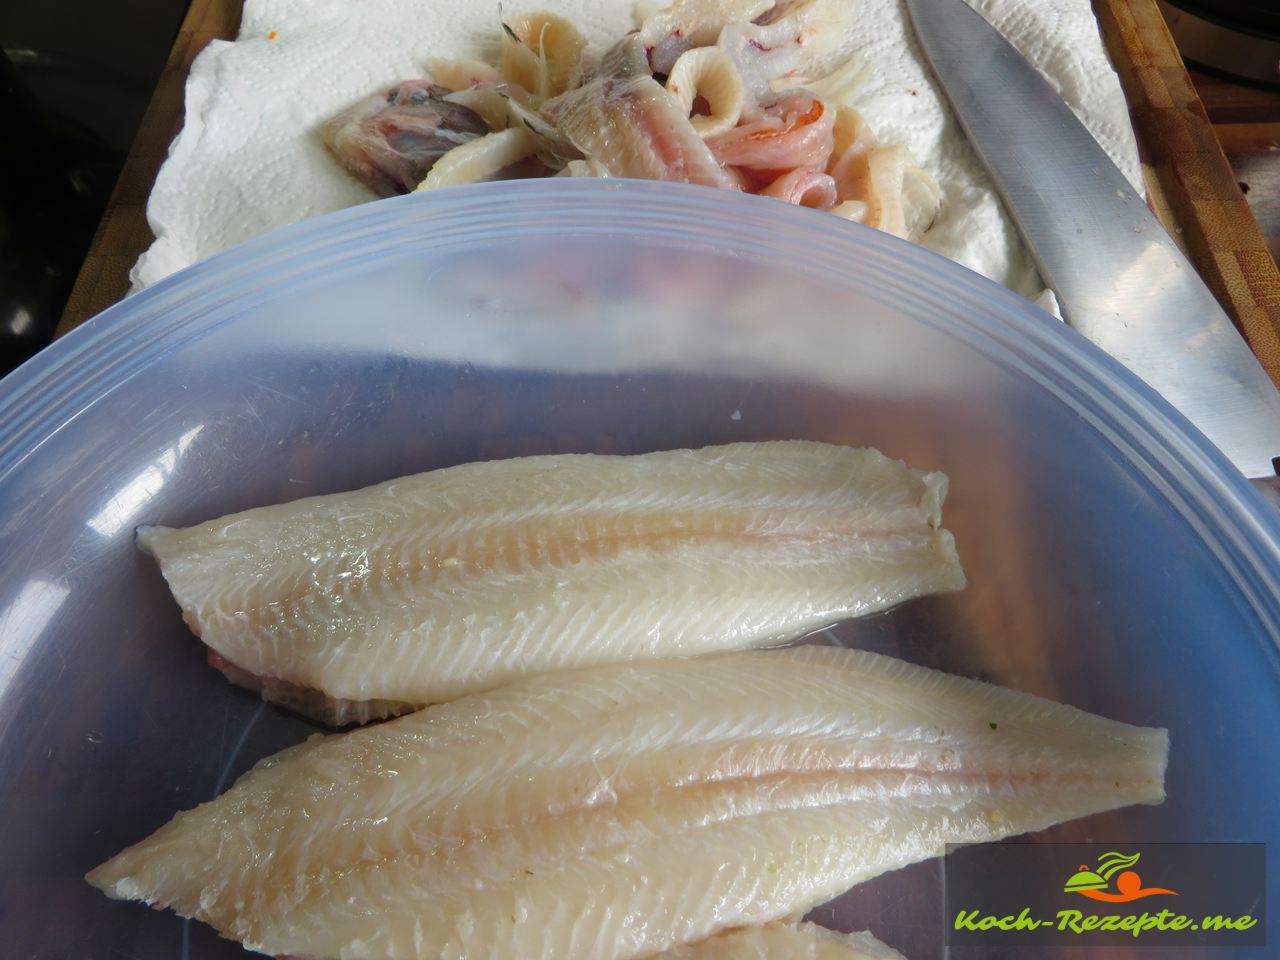 Plattfisch Pecorino Ei Panade mit Vegetable Cous-Cous Beilage